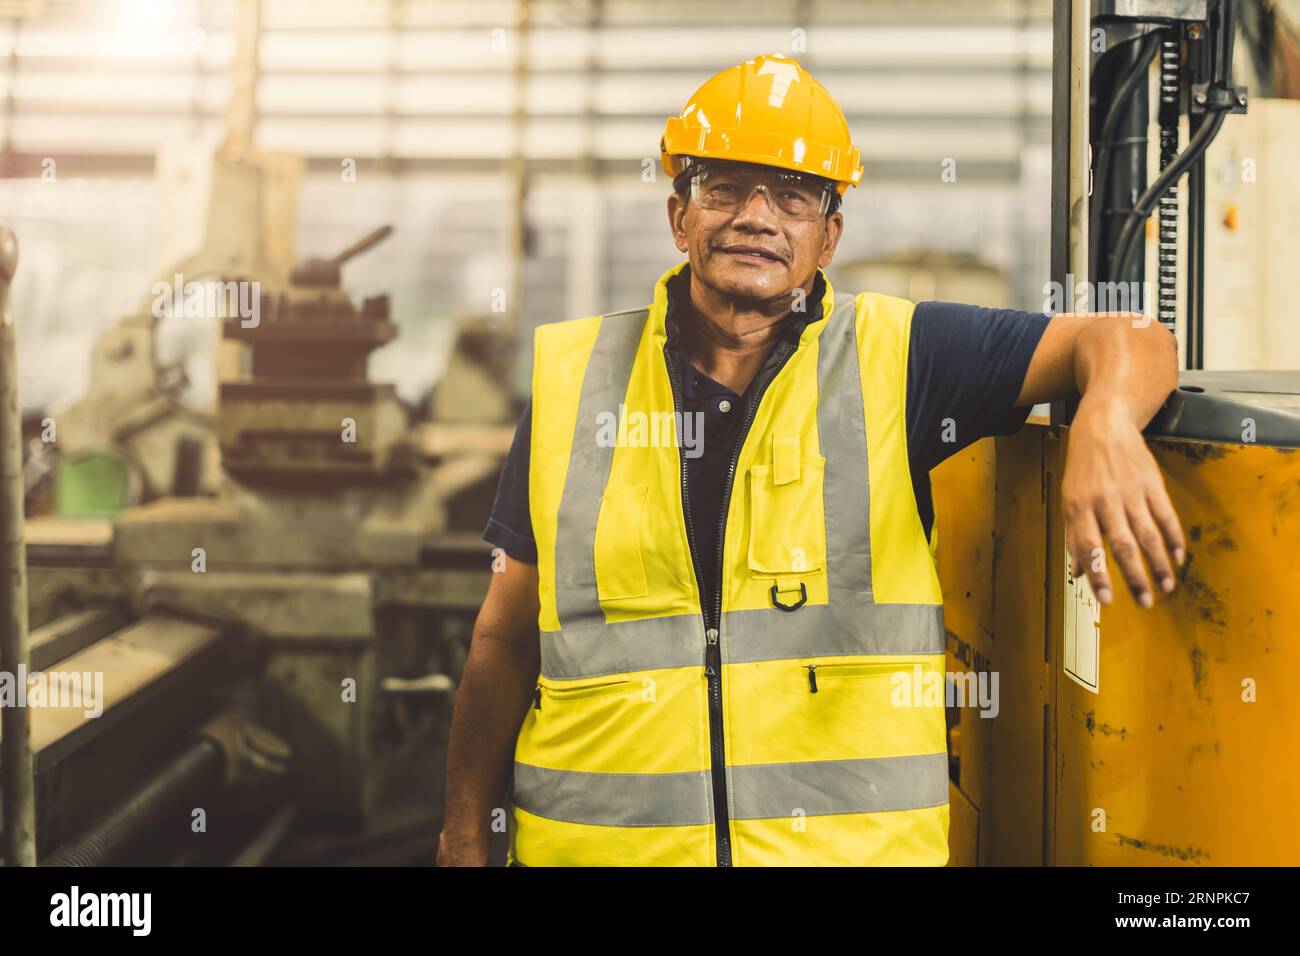 Ritratto Happy senior asiatico ingegnere lavoratore adulto che lavora nell'industria pesante con sicurezza Foto Stock